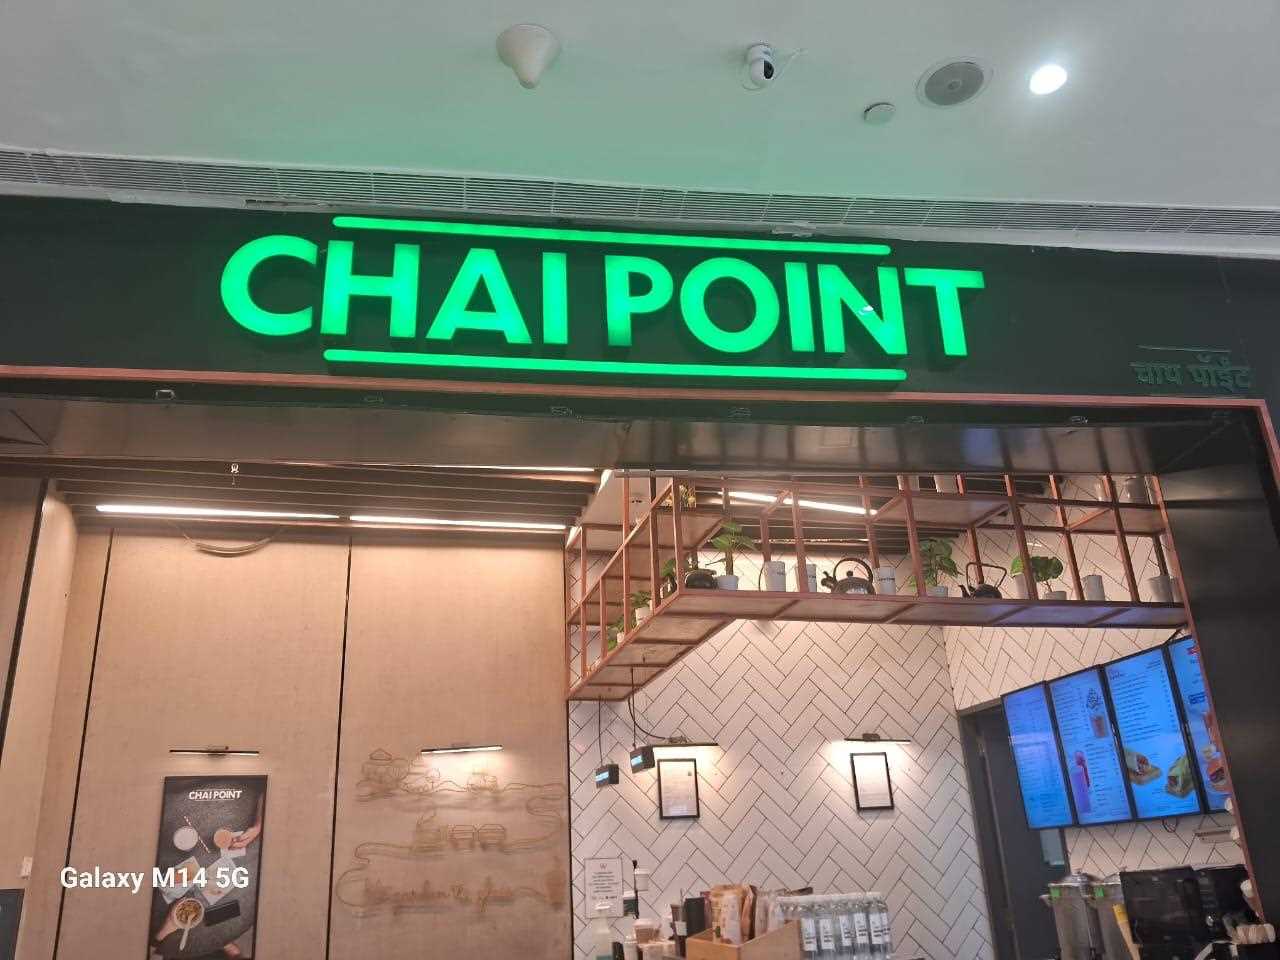 Chai Point - Phoenix Market City, Pune Cafe - Viman Nagar, Pune